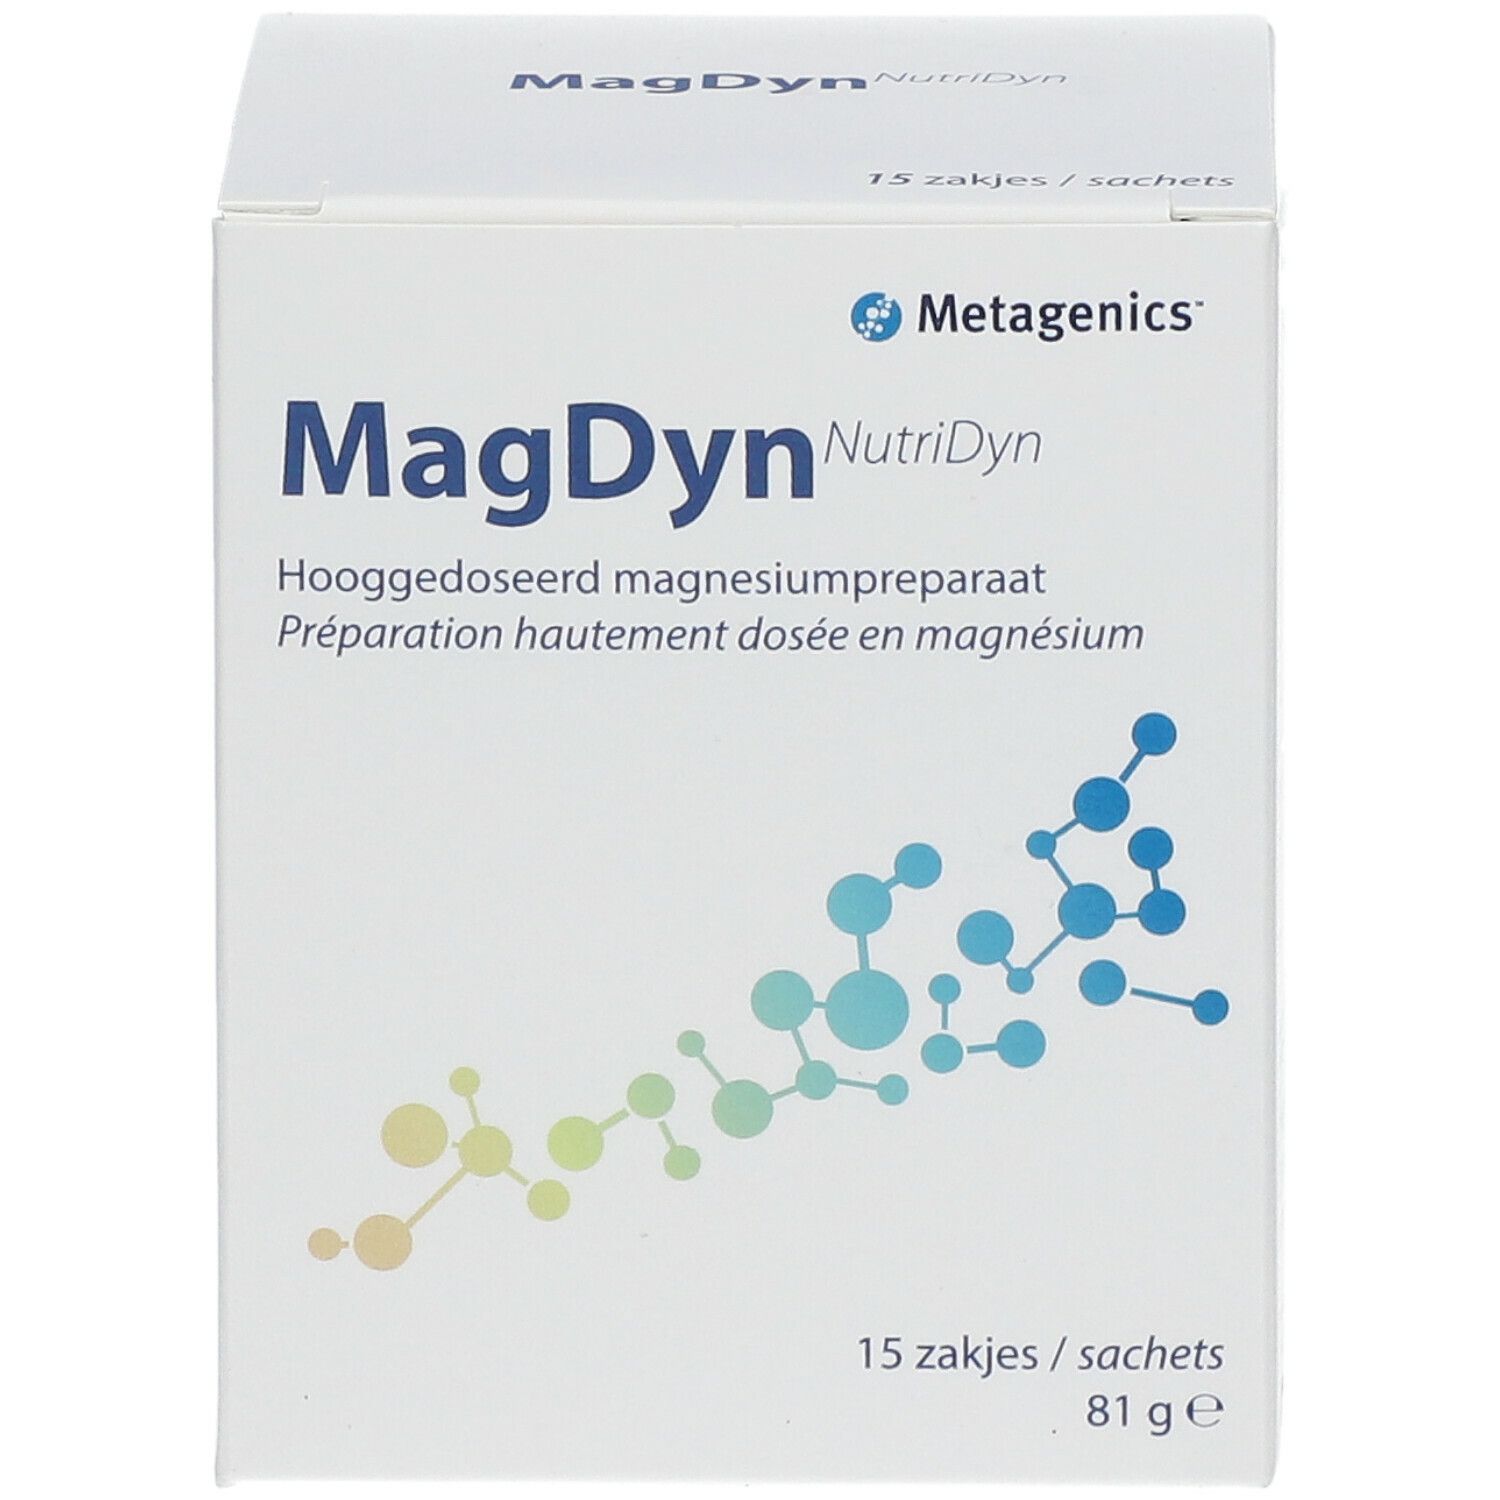 Metagenics MagDyn NutriDyn